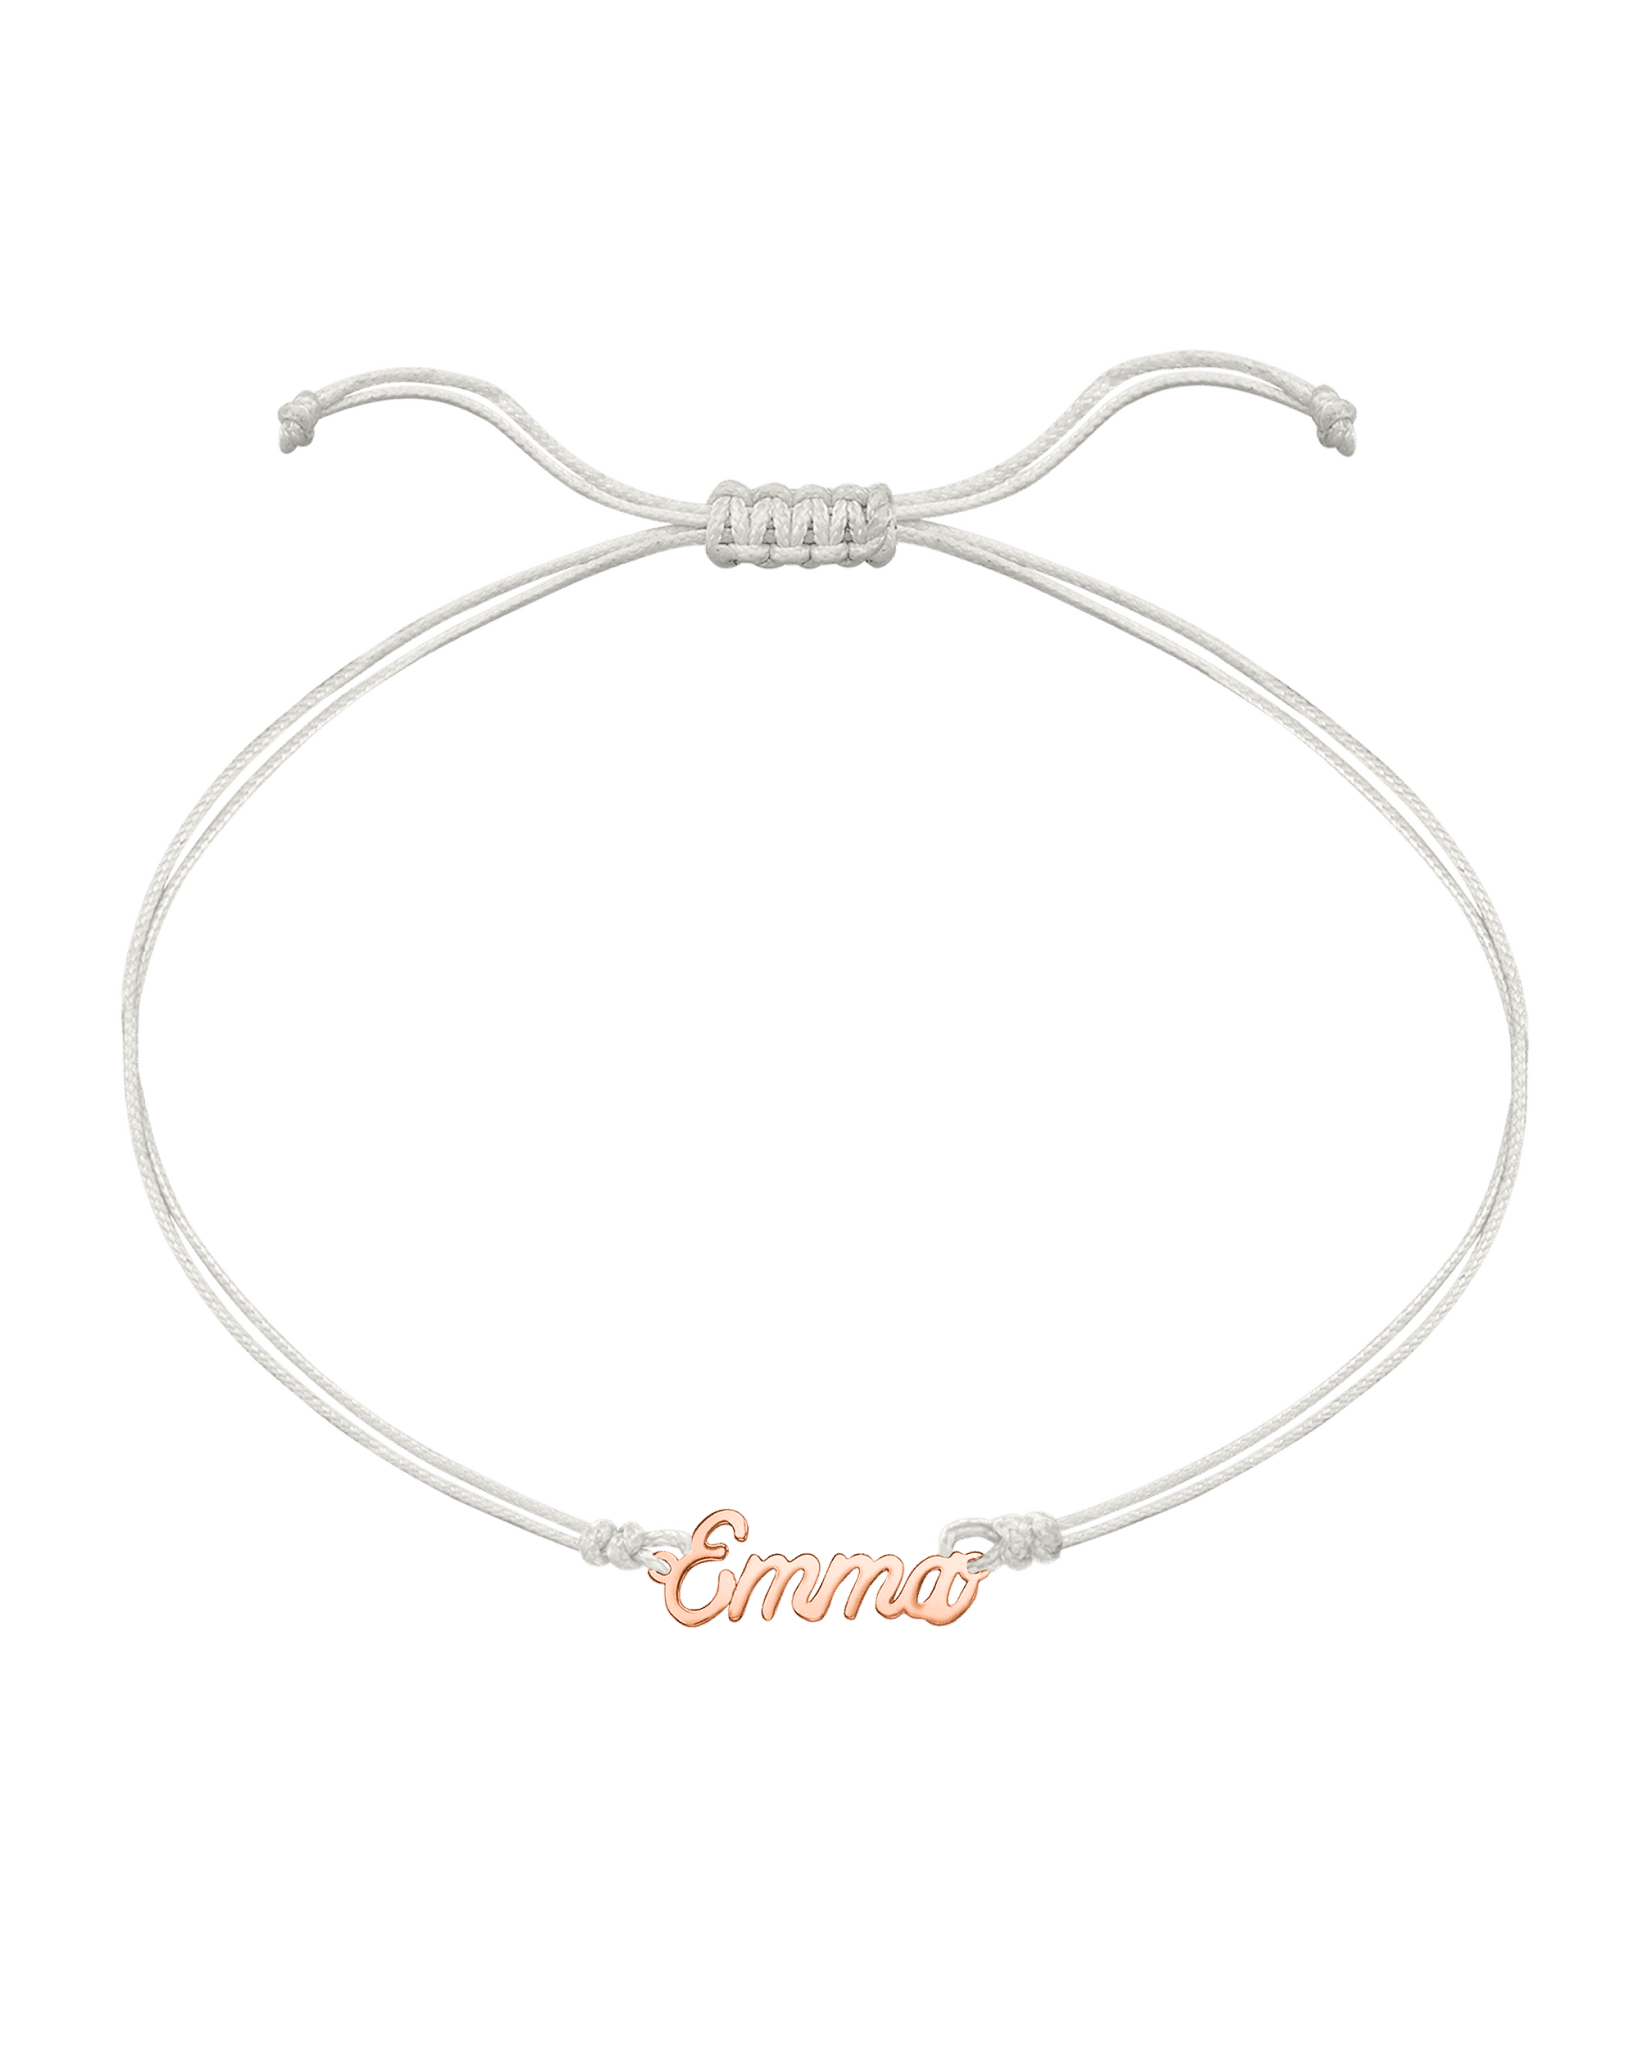 Name Plate String of Love - 14K Rose Gold Bracelets 14K Solid Gold Pearl 1 